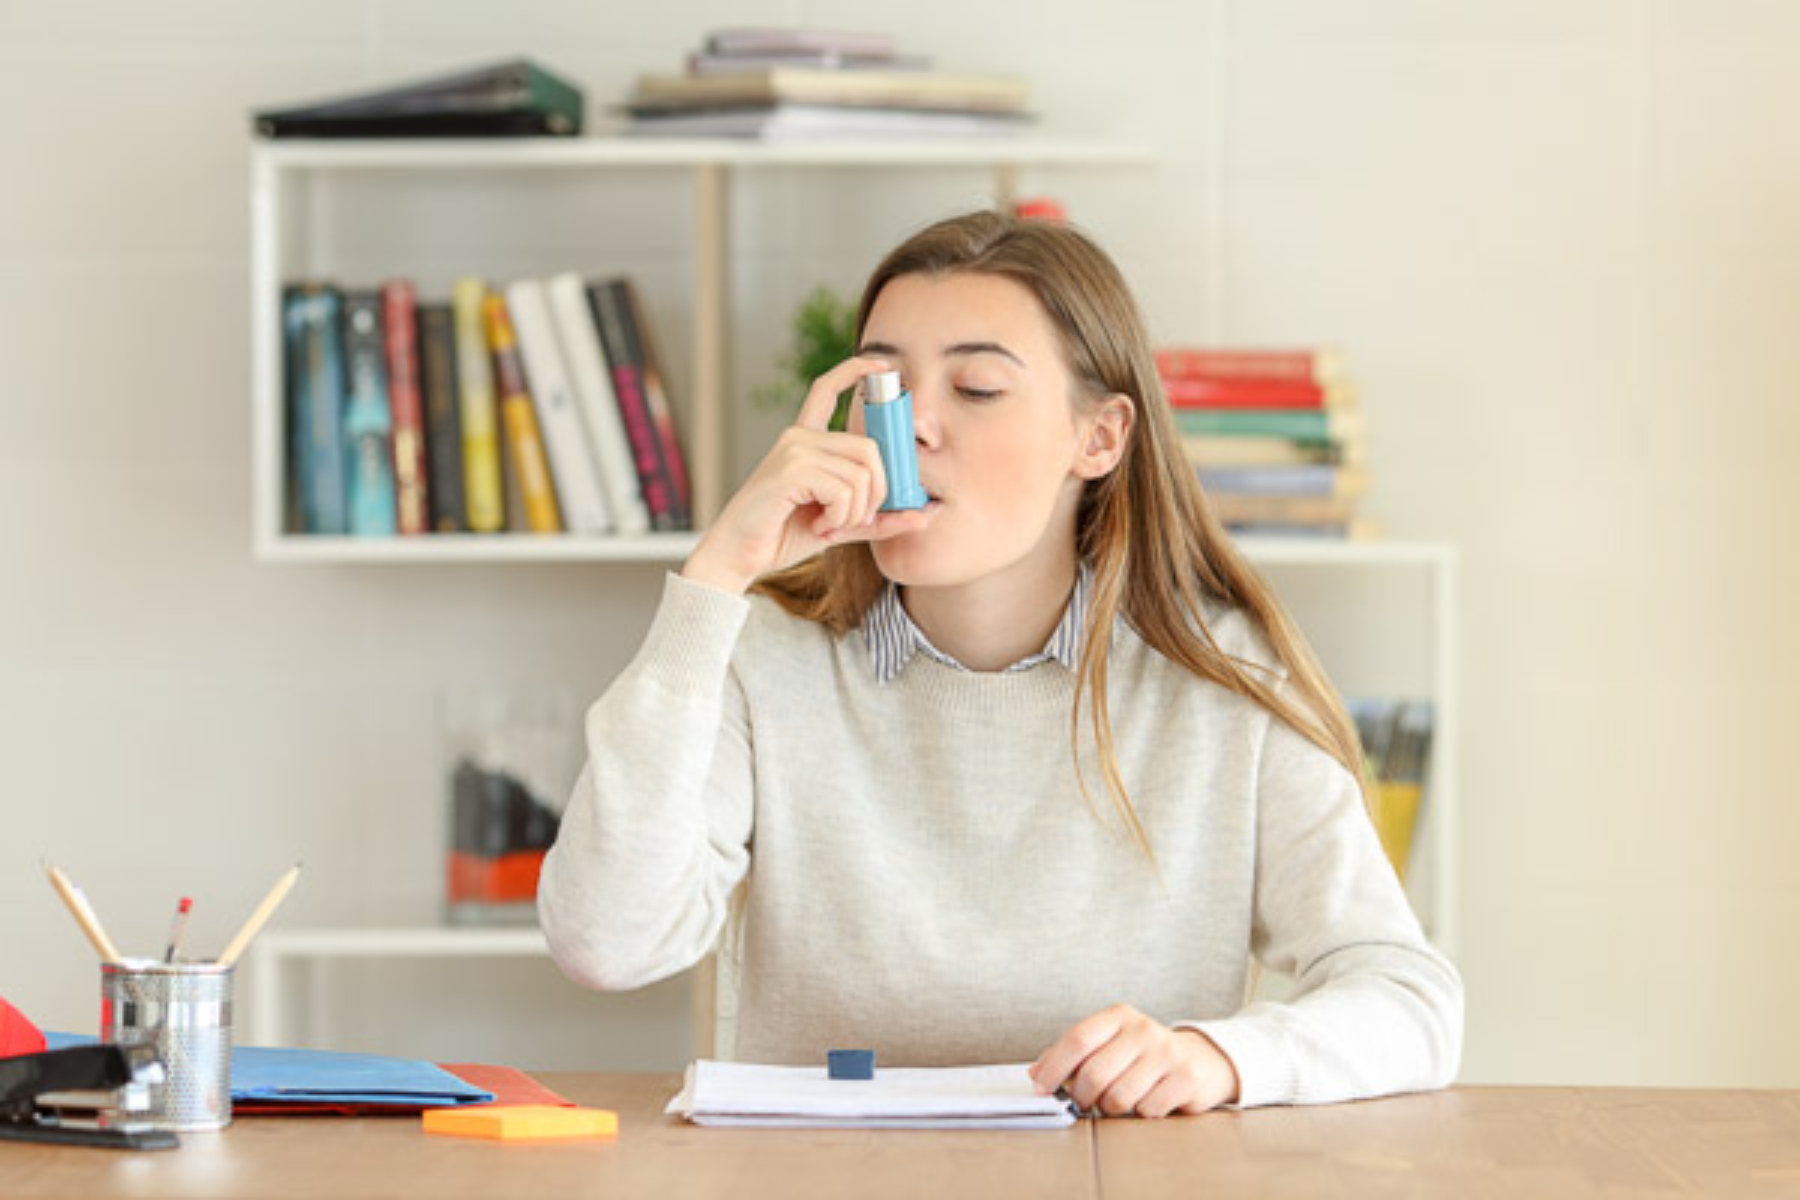 Άσθμα ενηλίκων: Μπορεί να εμφανισθεί το άσθμα στην ενήλικη ζωή;